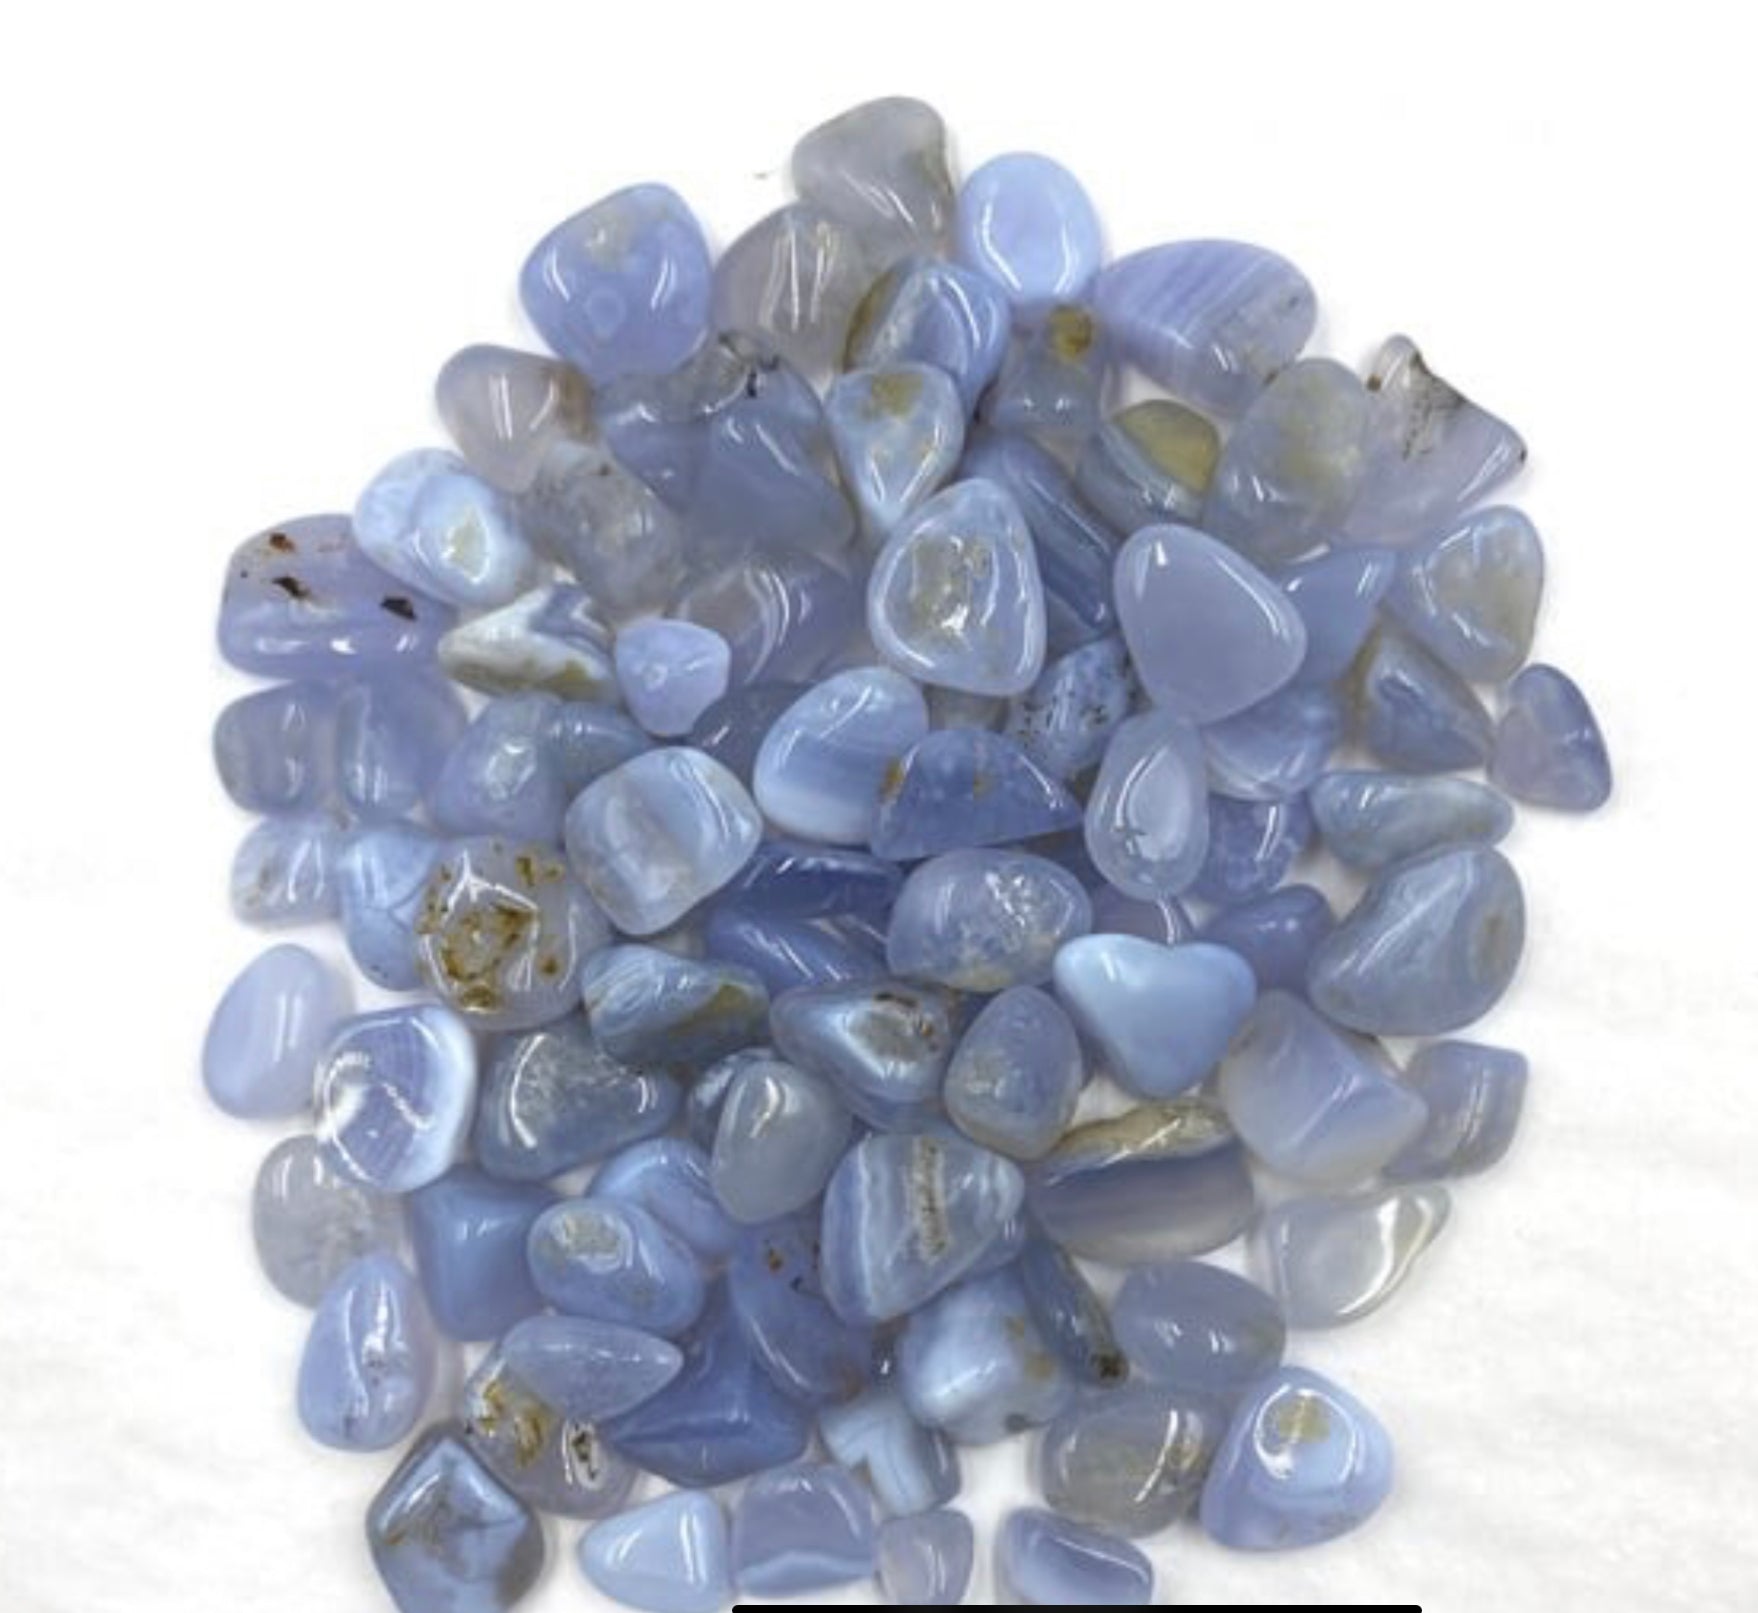 Tumbled Stone- Blue Lace Agate